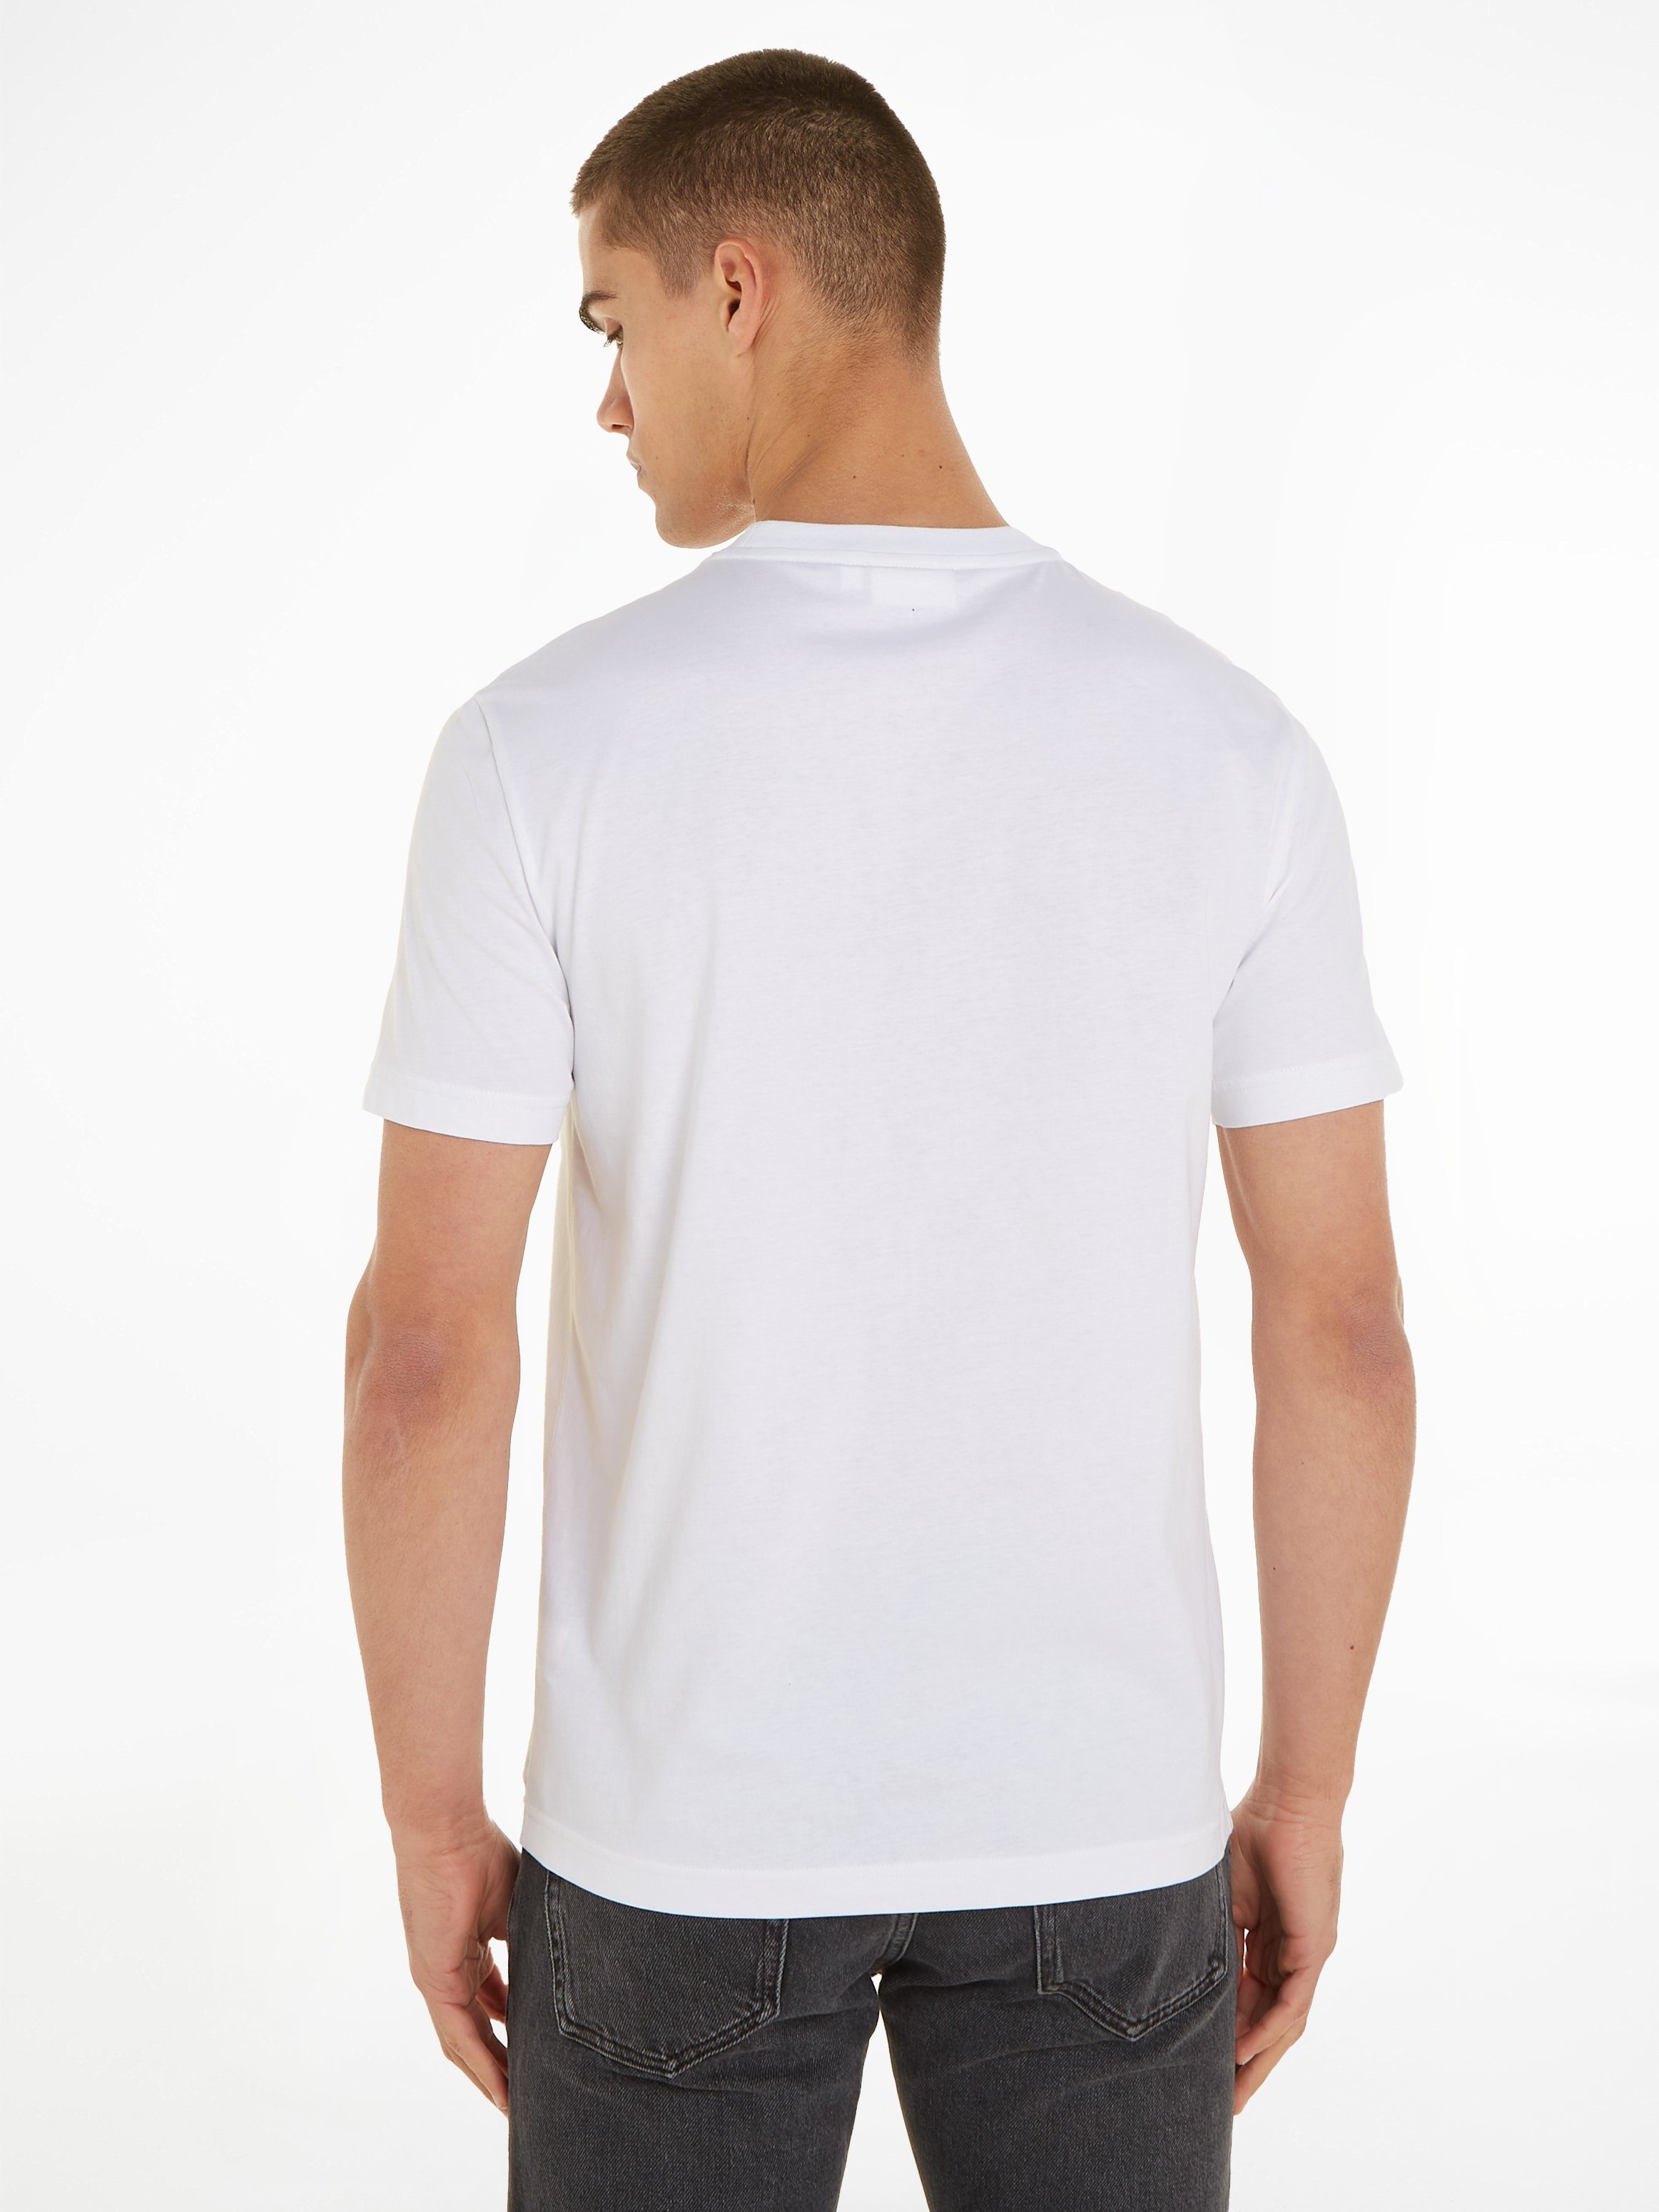 Calvin Klein T-Shirt DOUBLE LOGO mit White T-SHIRT FLOCK Bright Markenlabel